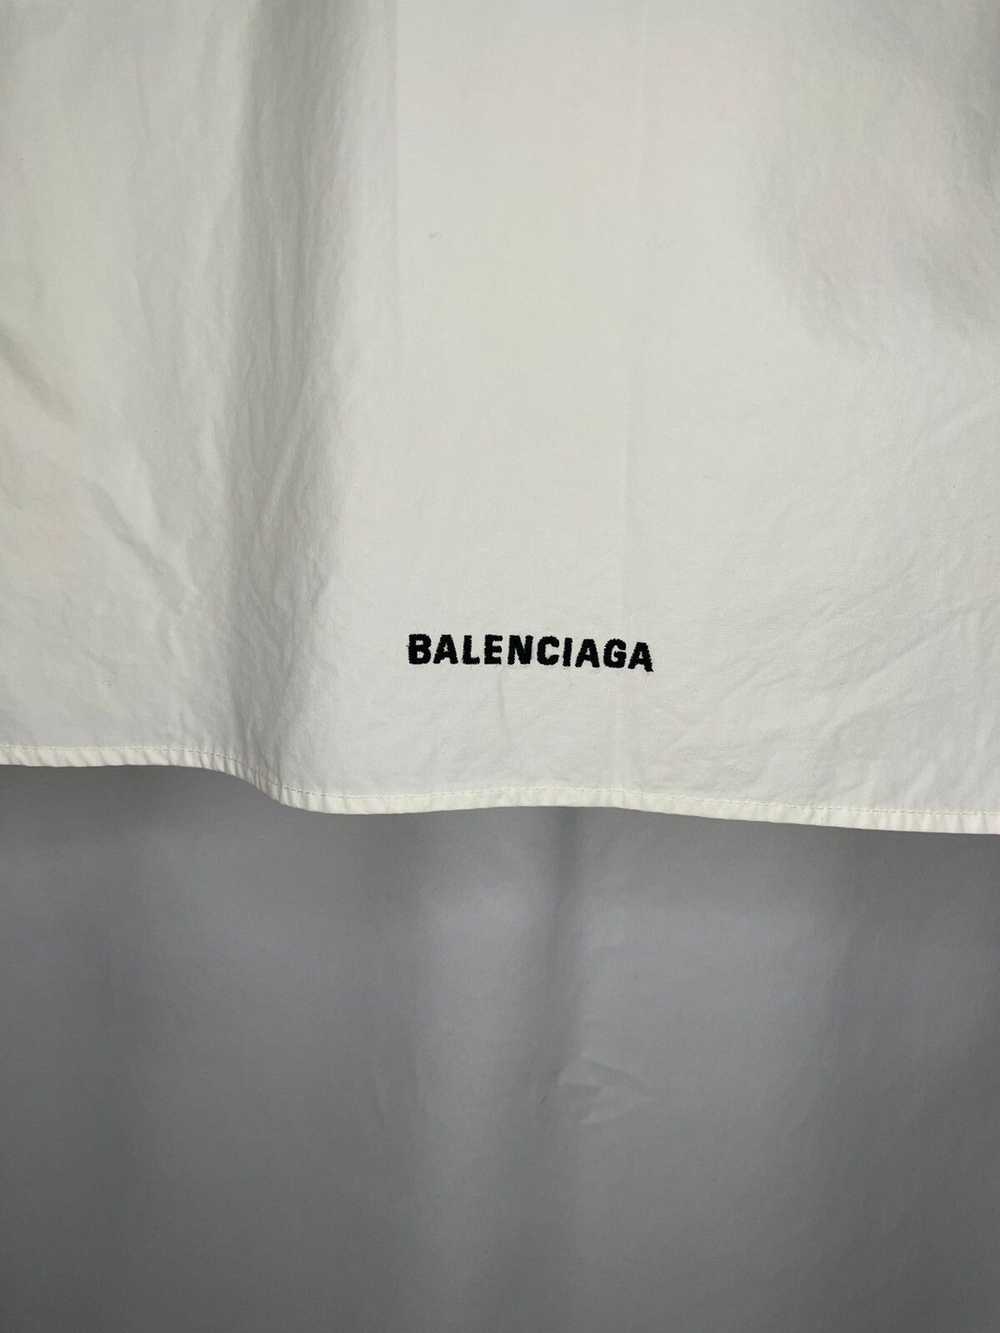 Balenciaga Balenciaga Embroidered Logo Shirt - image 5